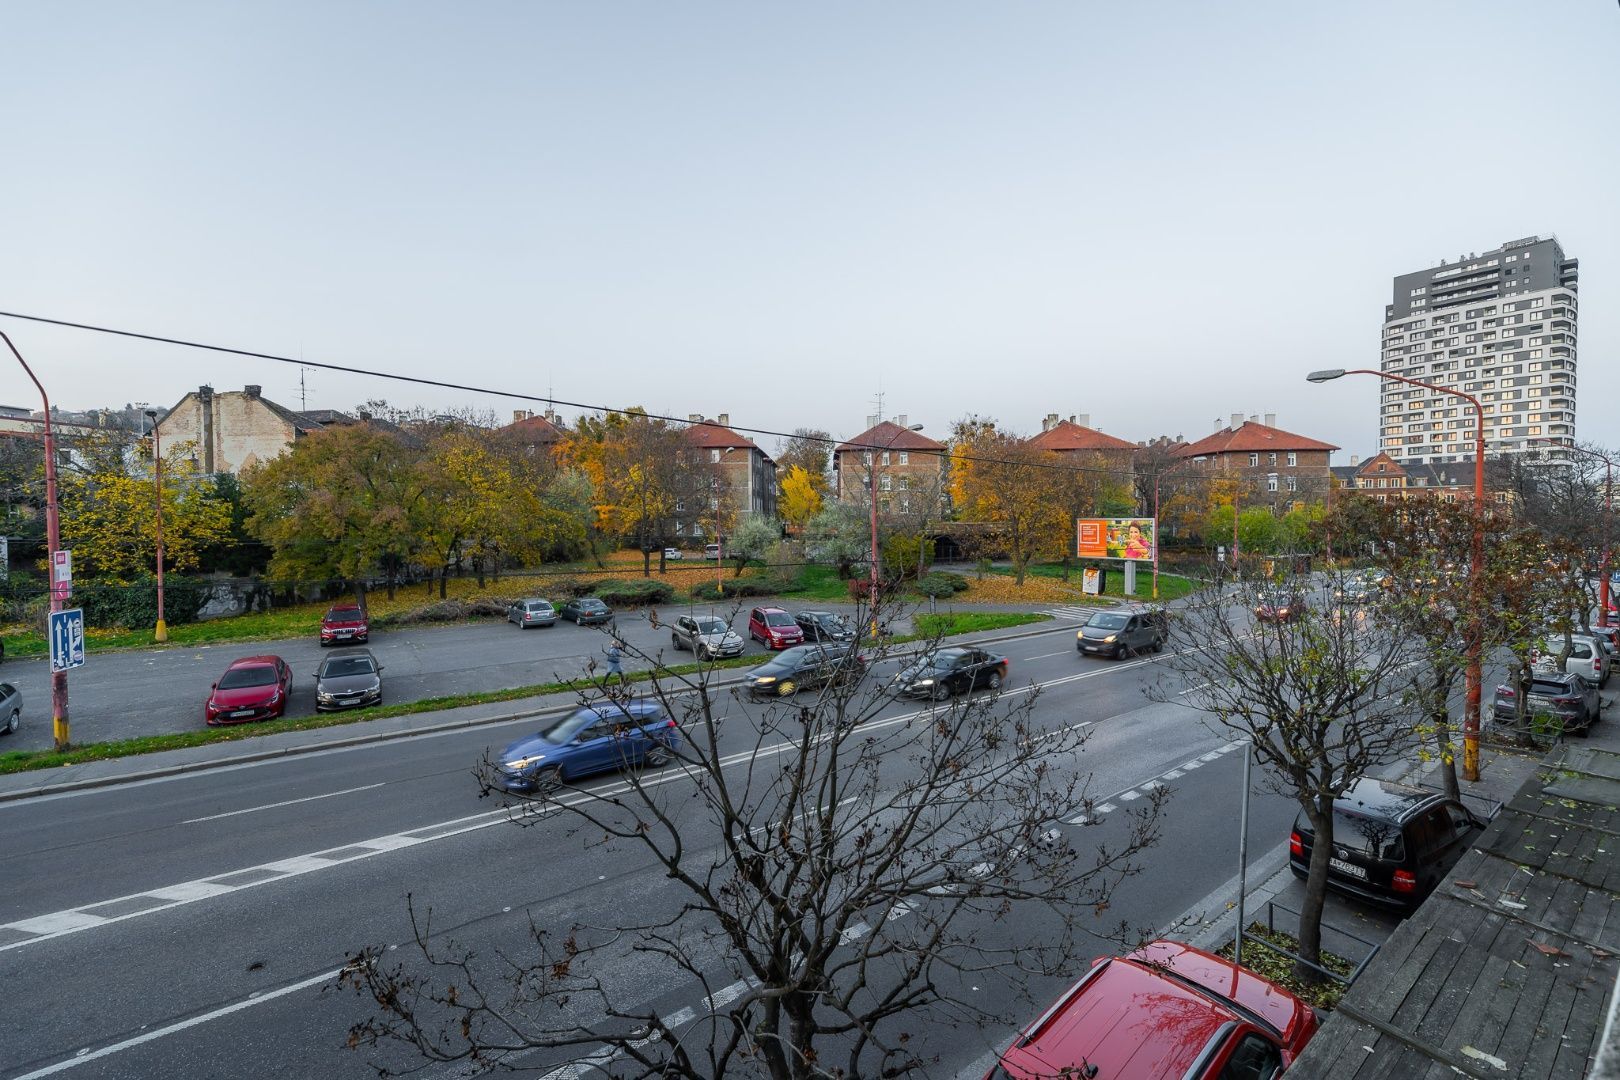 EXKLUZÍVNE: Na predaj bytový objekt a menší dom v srdci Bratislavy